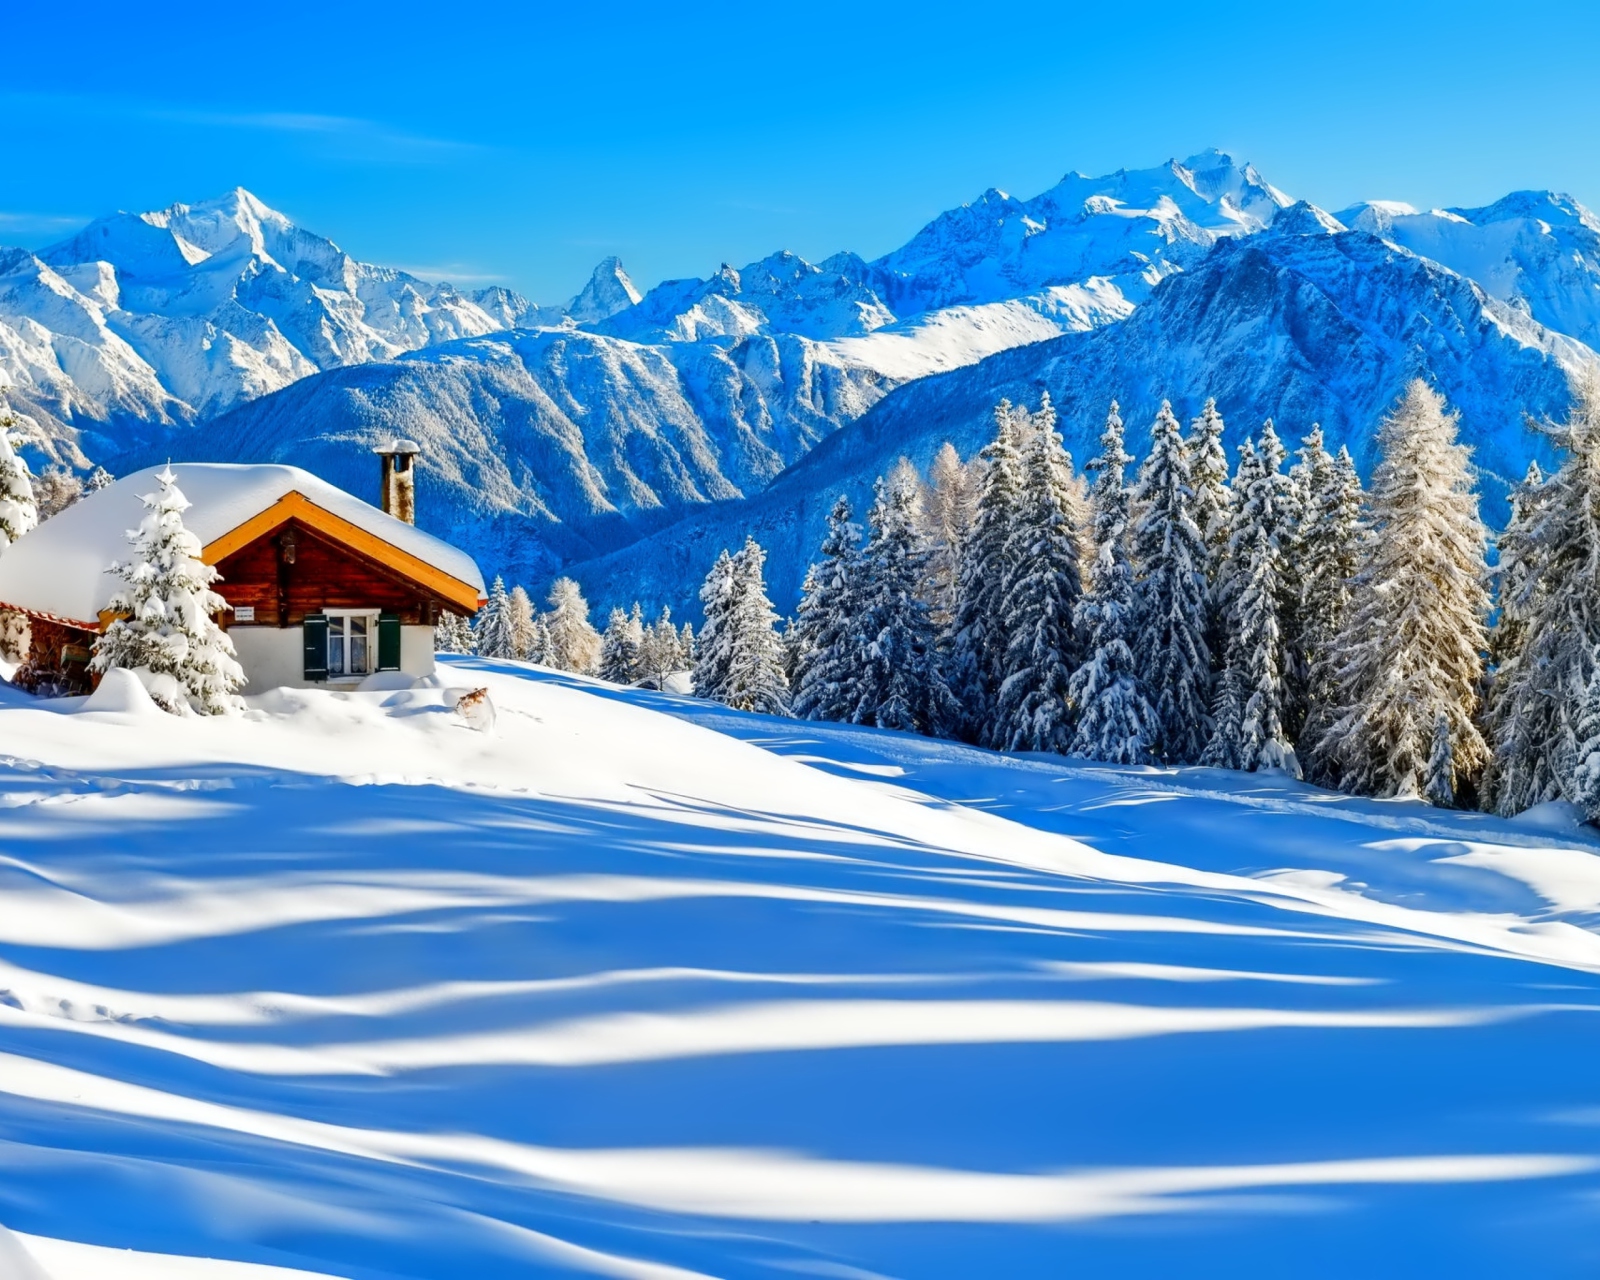 Обои Switzerland Alps in Winter 1600x1280